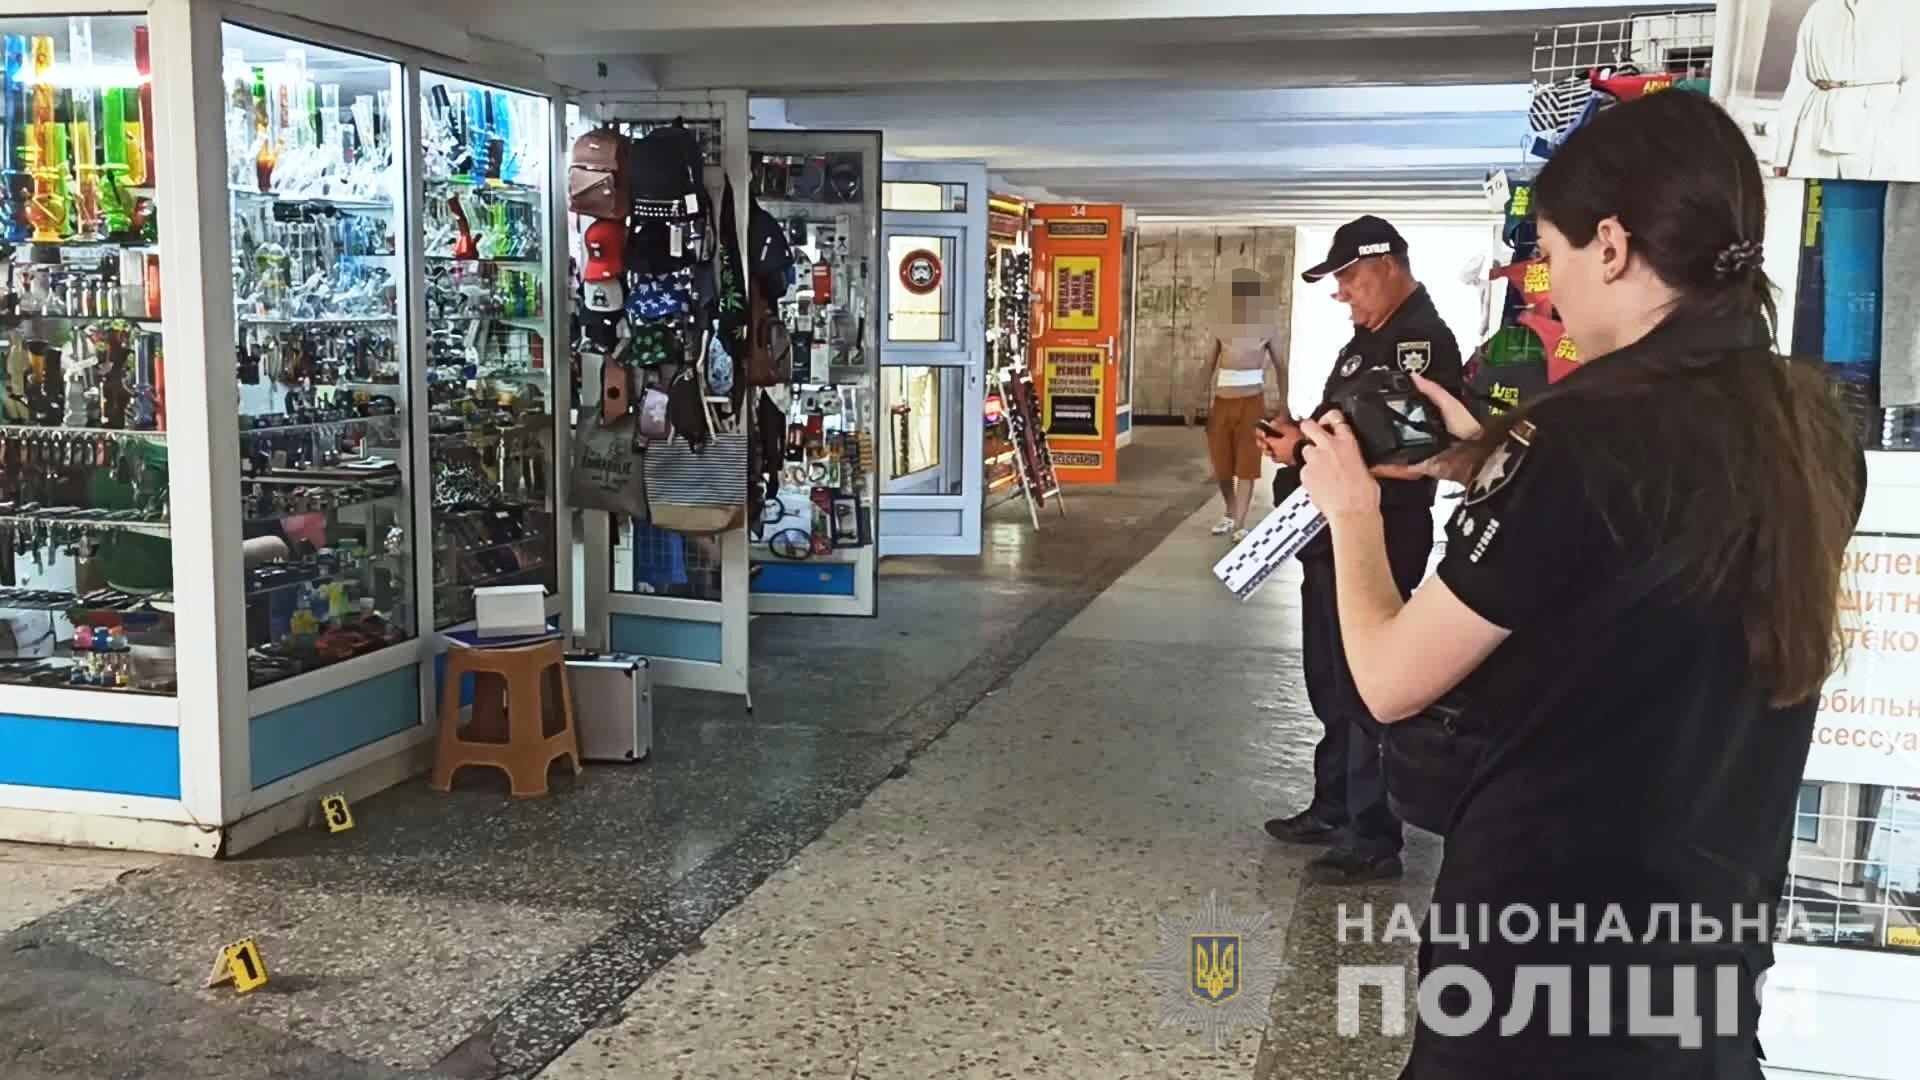 В Одесі поліцейські затримали вихідця із Закавказзя за підозрою у спричиненні ножового поранення місцевому жителю